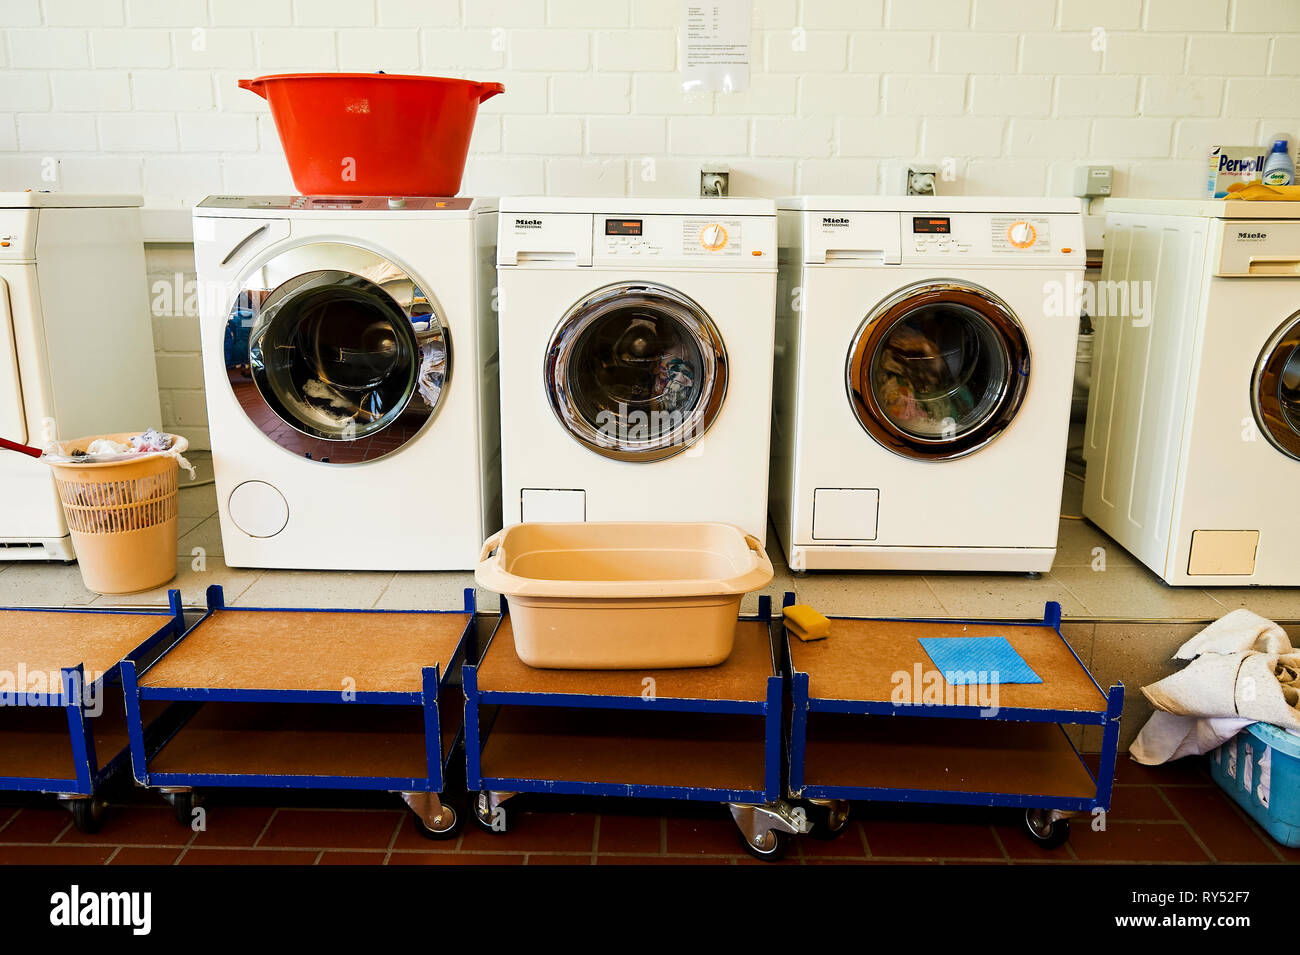 Waschmaschinen und ein Trockner stehen nebeneinader in einem Waschkeller. Auf dem Trockner steht ein roter Waeschekrob und im Vordergrund  eine Schues Stock Photo